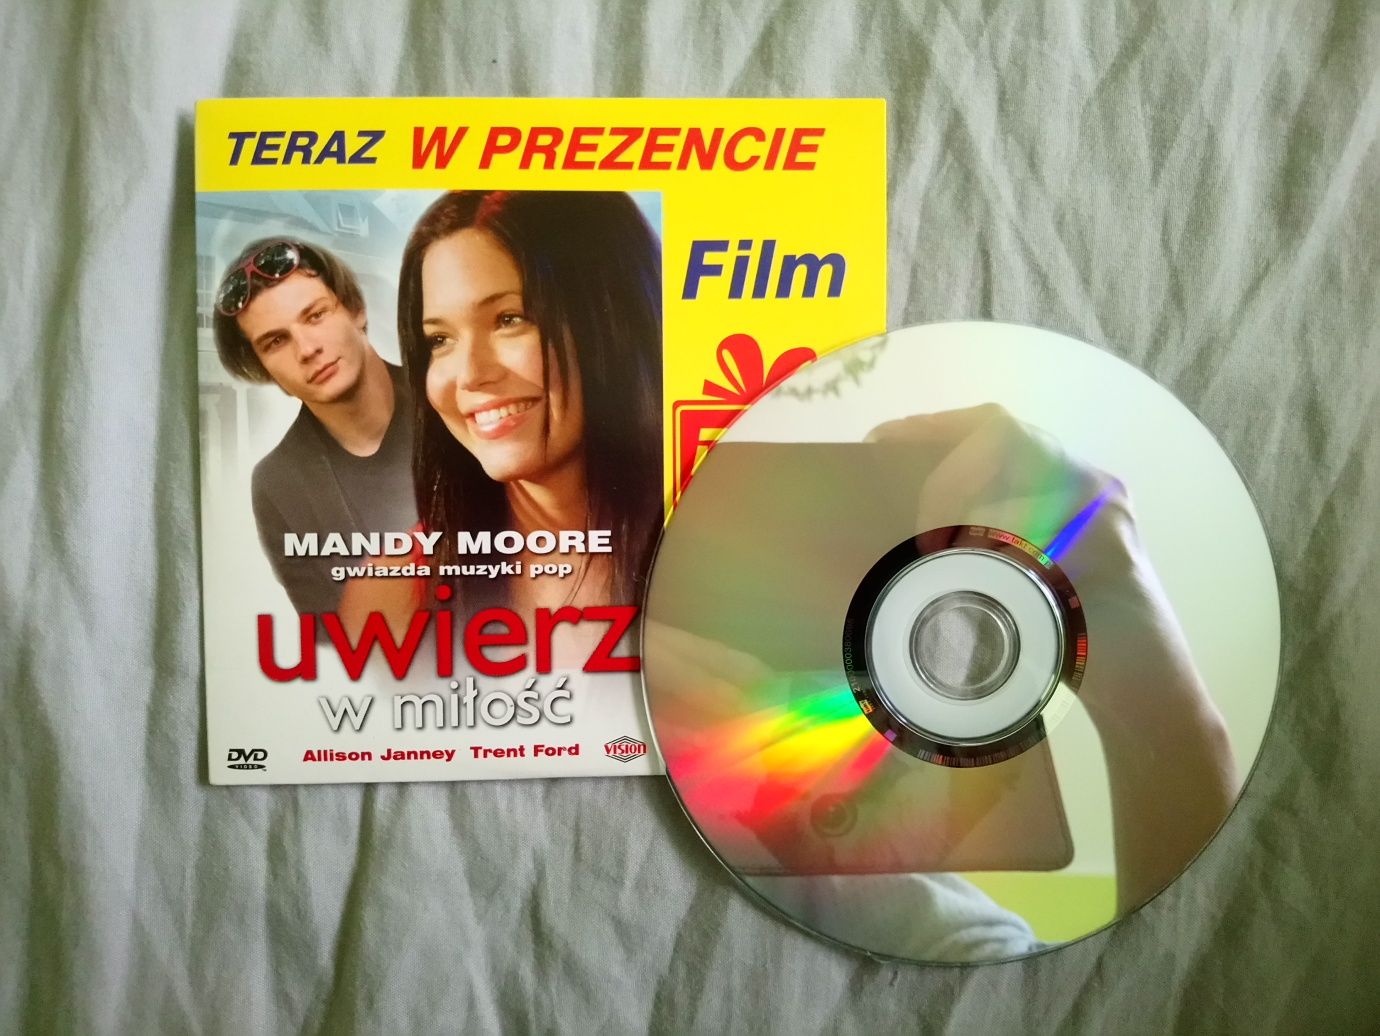 Film DVD Uwierz w miłość, reż. Clare Kilner, 2003